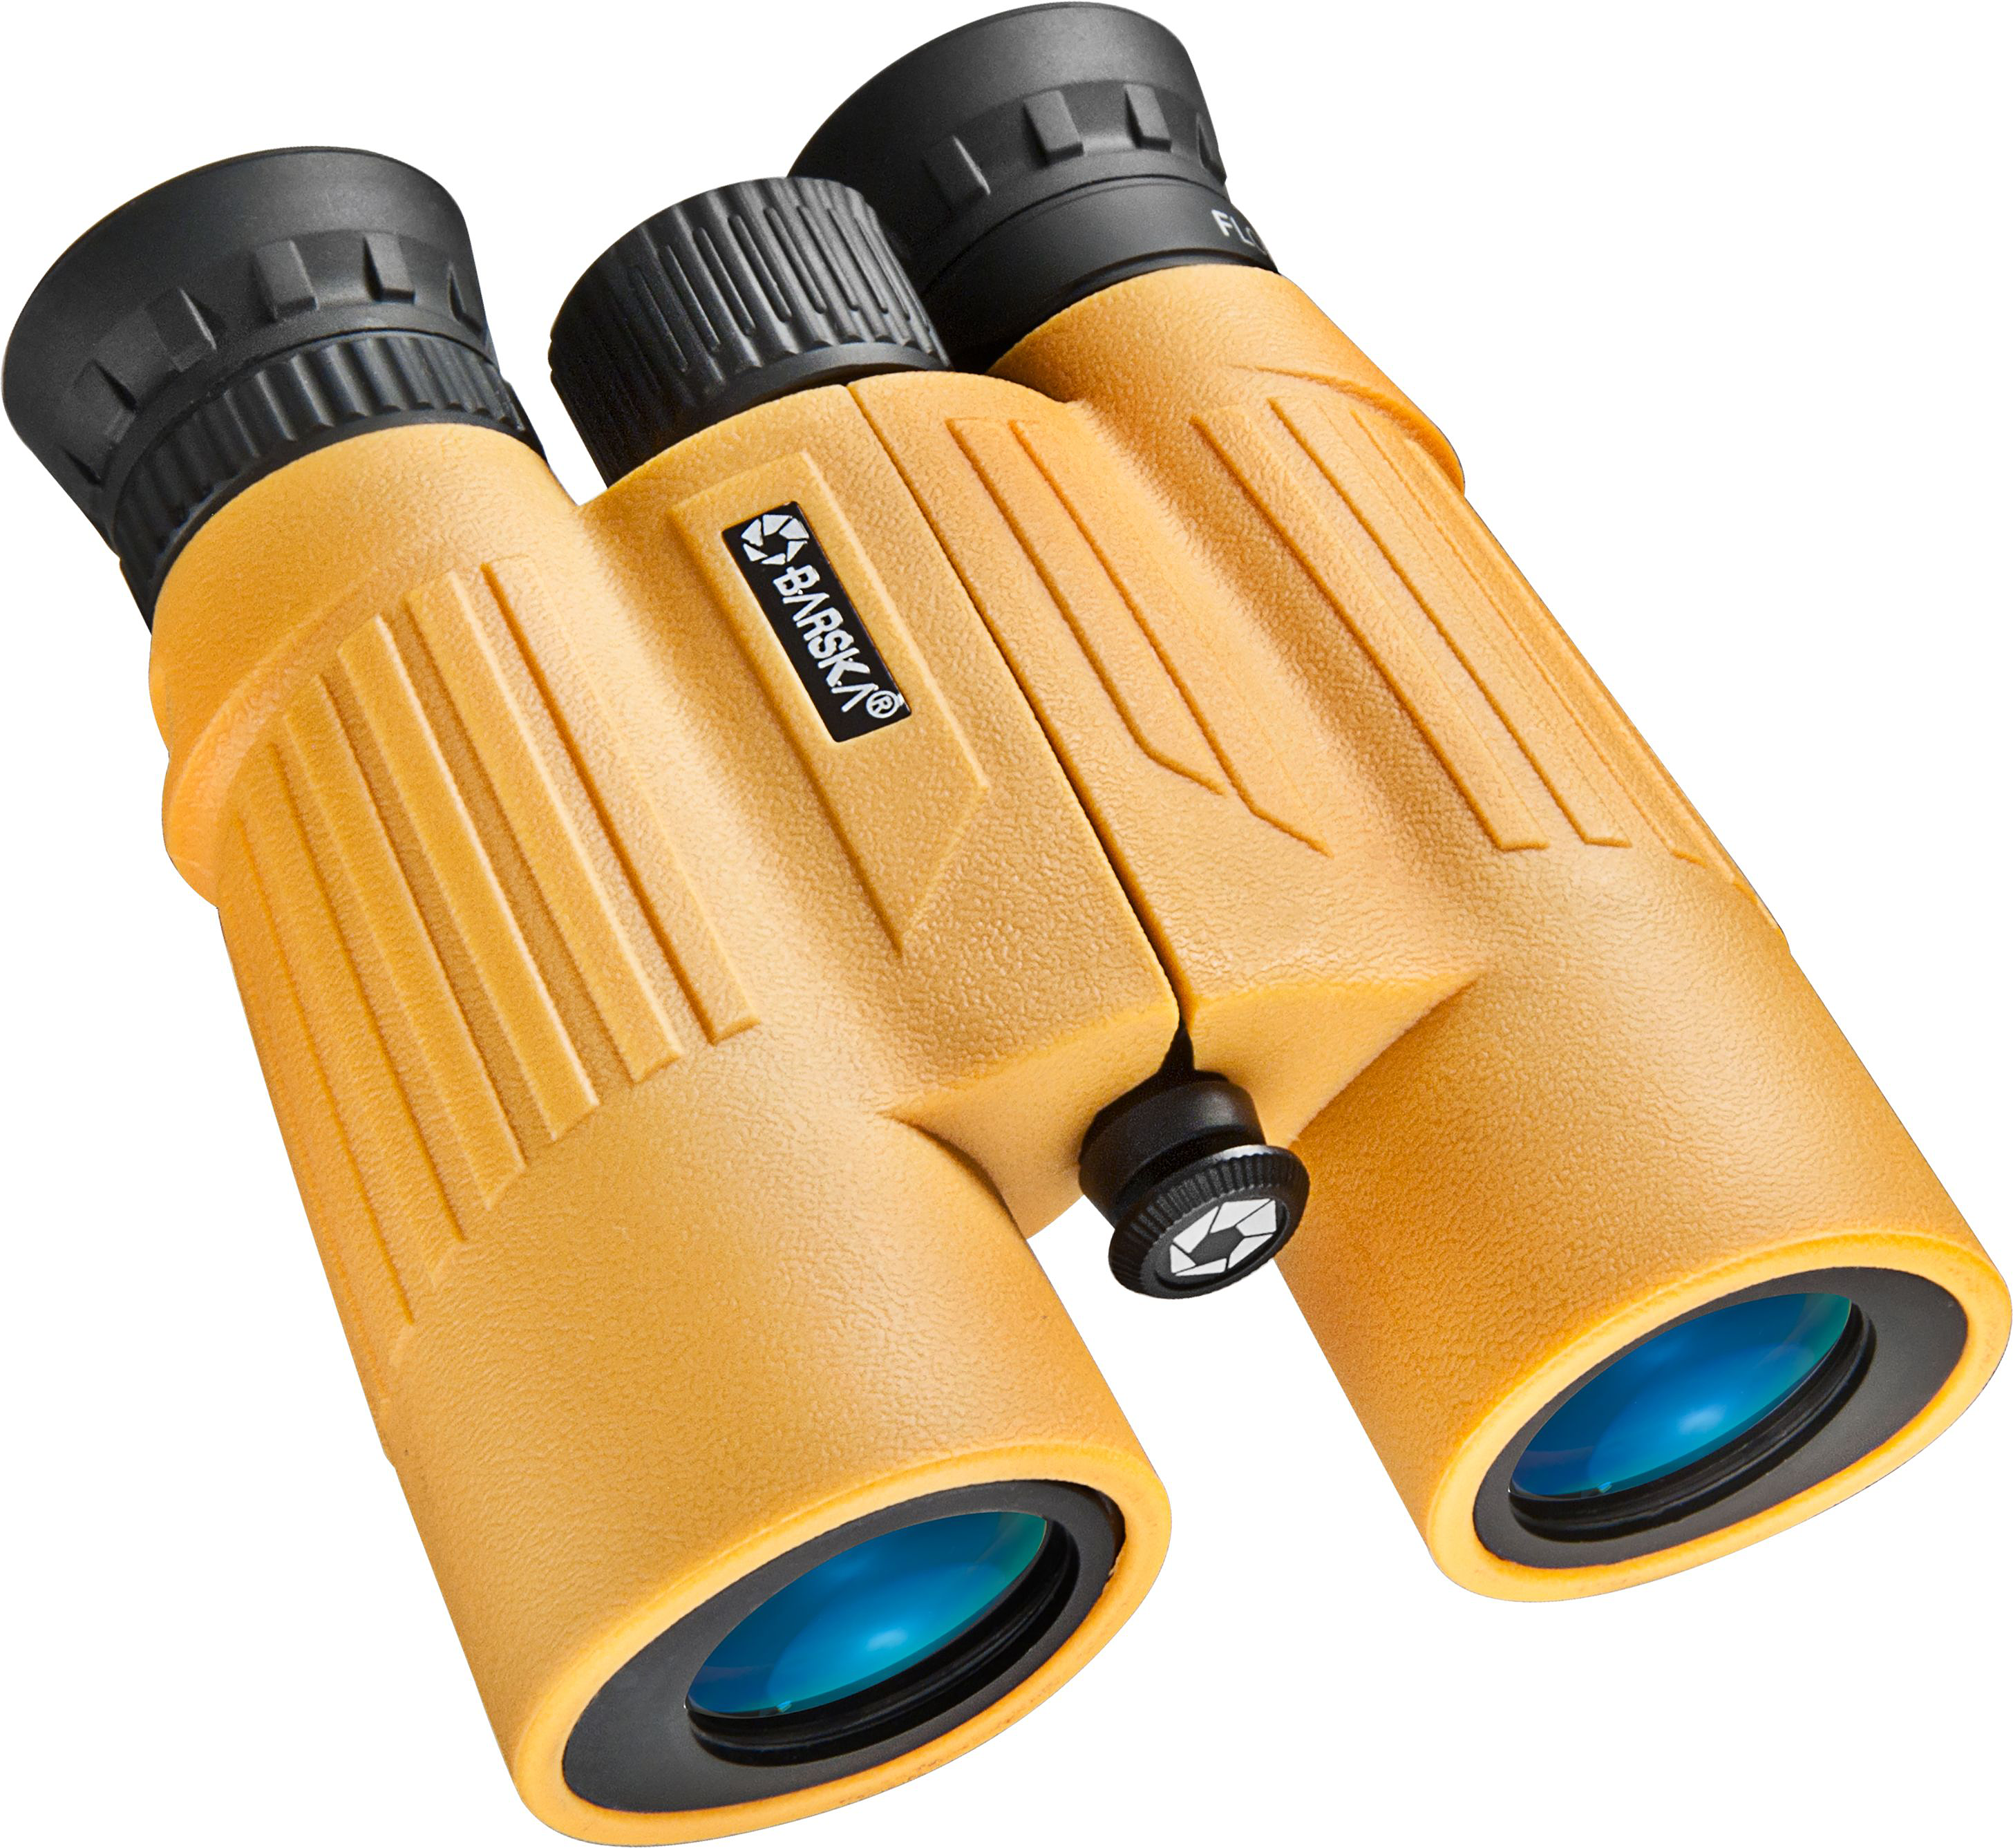 Barska Floatmaster Waterproof Yellow Floating BAK-7 Roof-Prism Binoculars